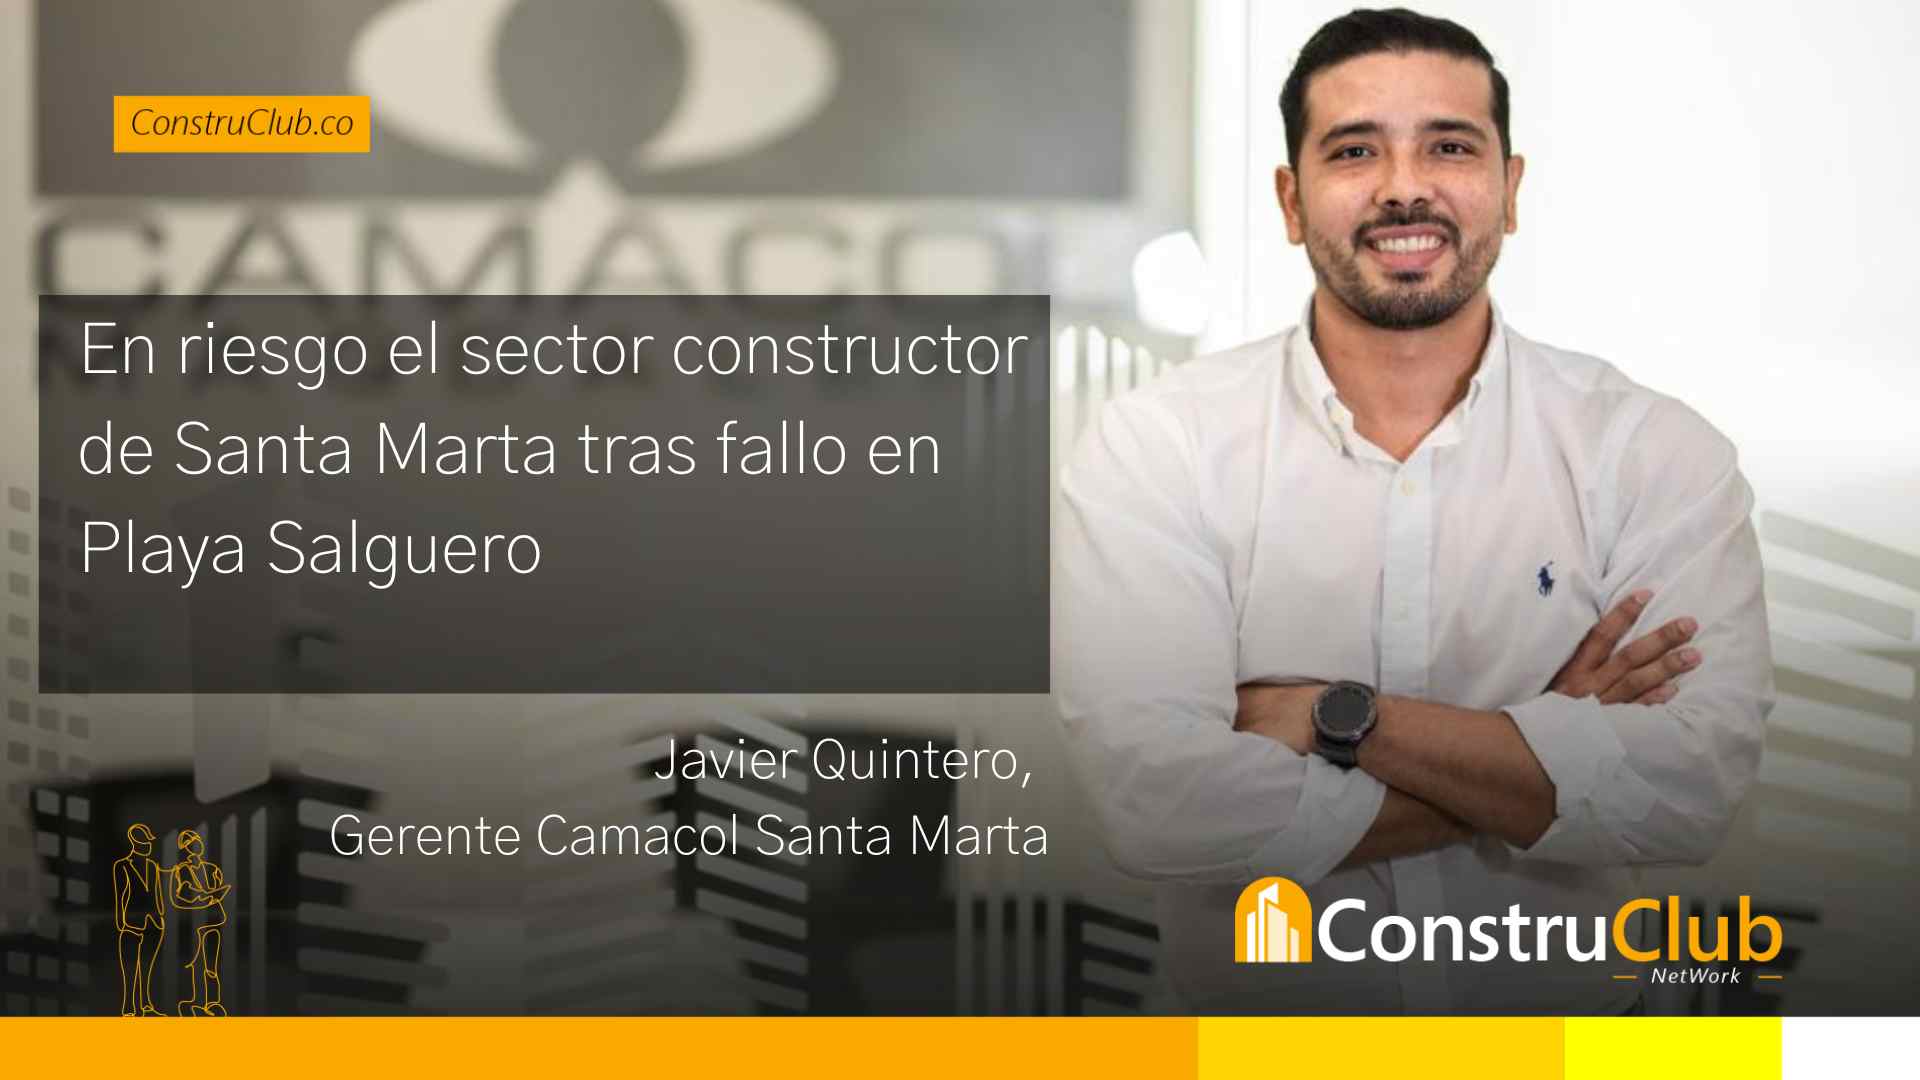 En riesgo el sector constructor de Santa Marta tras fallo en playa de Salguero